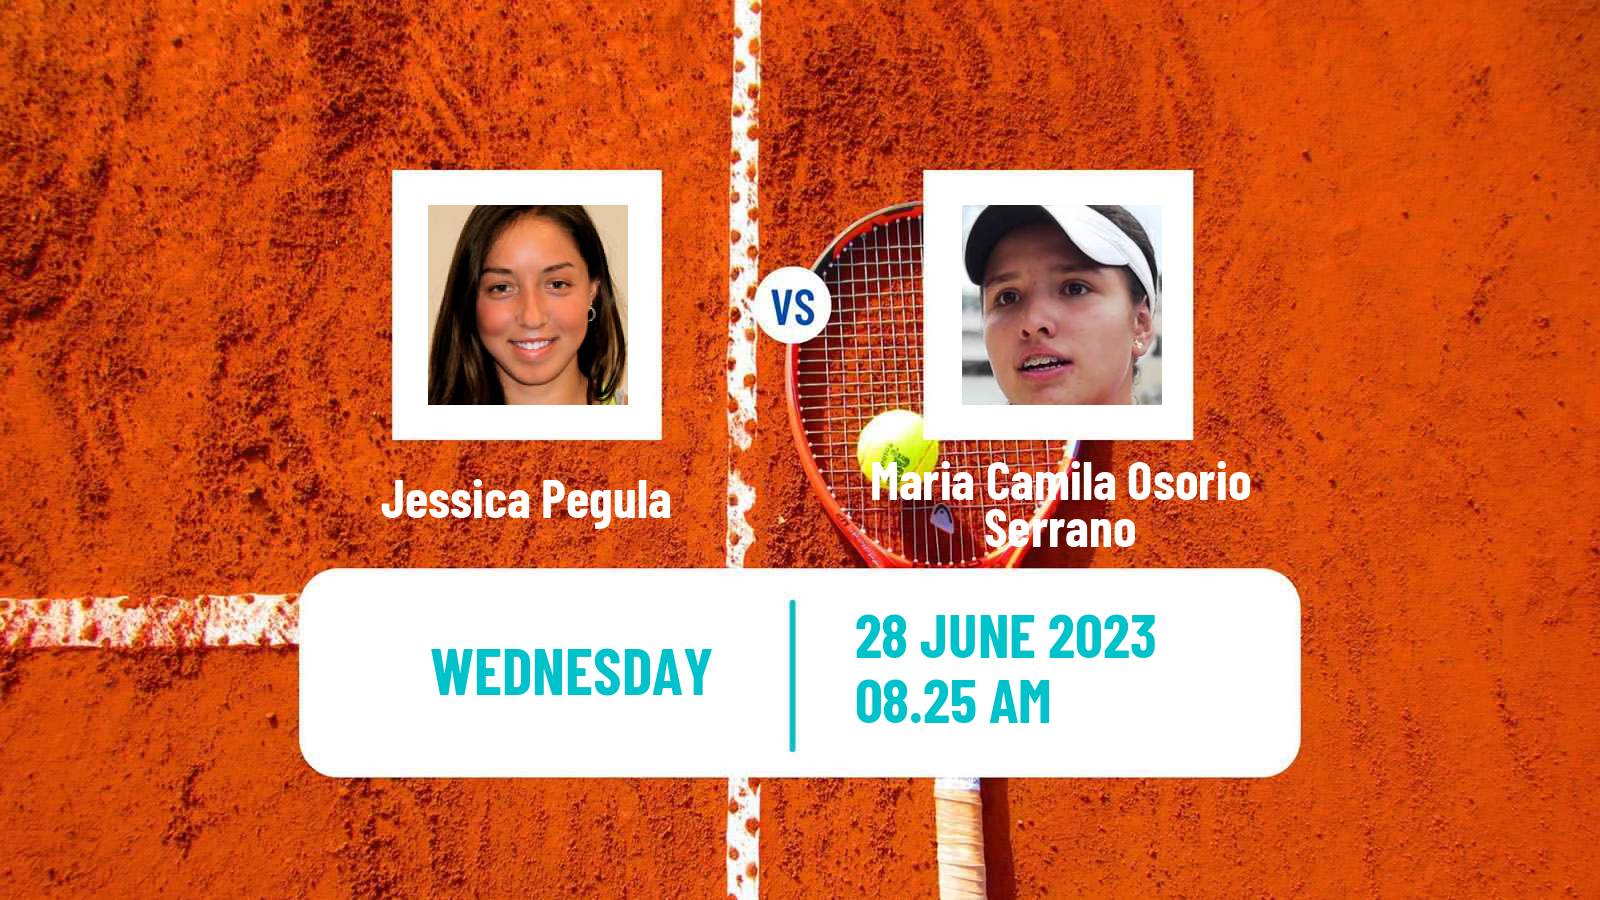 Tennis WTA Eastbourne Jessica Pegula - Maria Camila Osorio Serrano